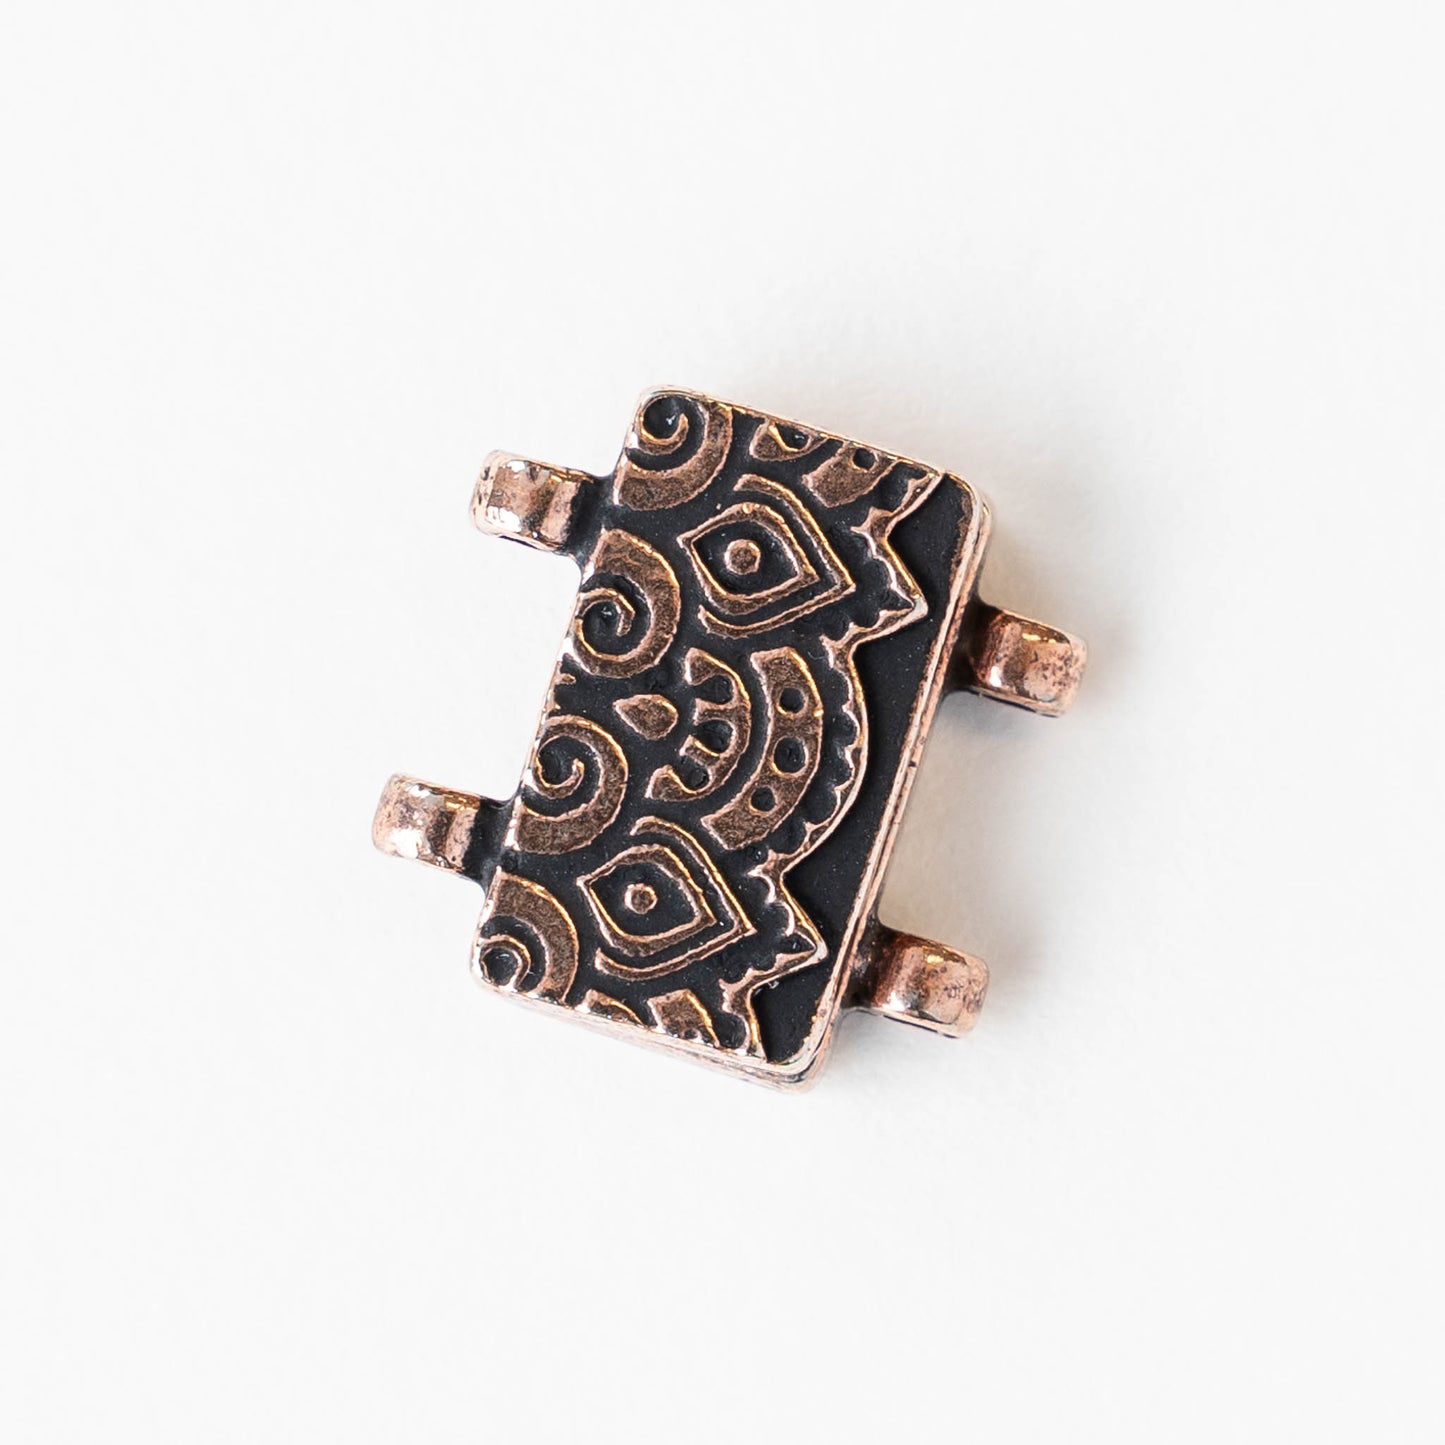 Temple Stitch-in Magnet Clasp - Antiqued Copper  - 1 clasp